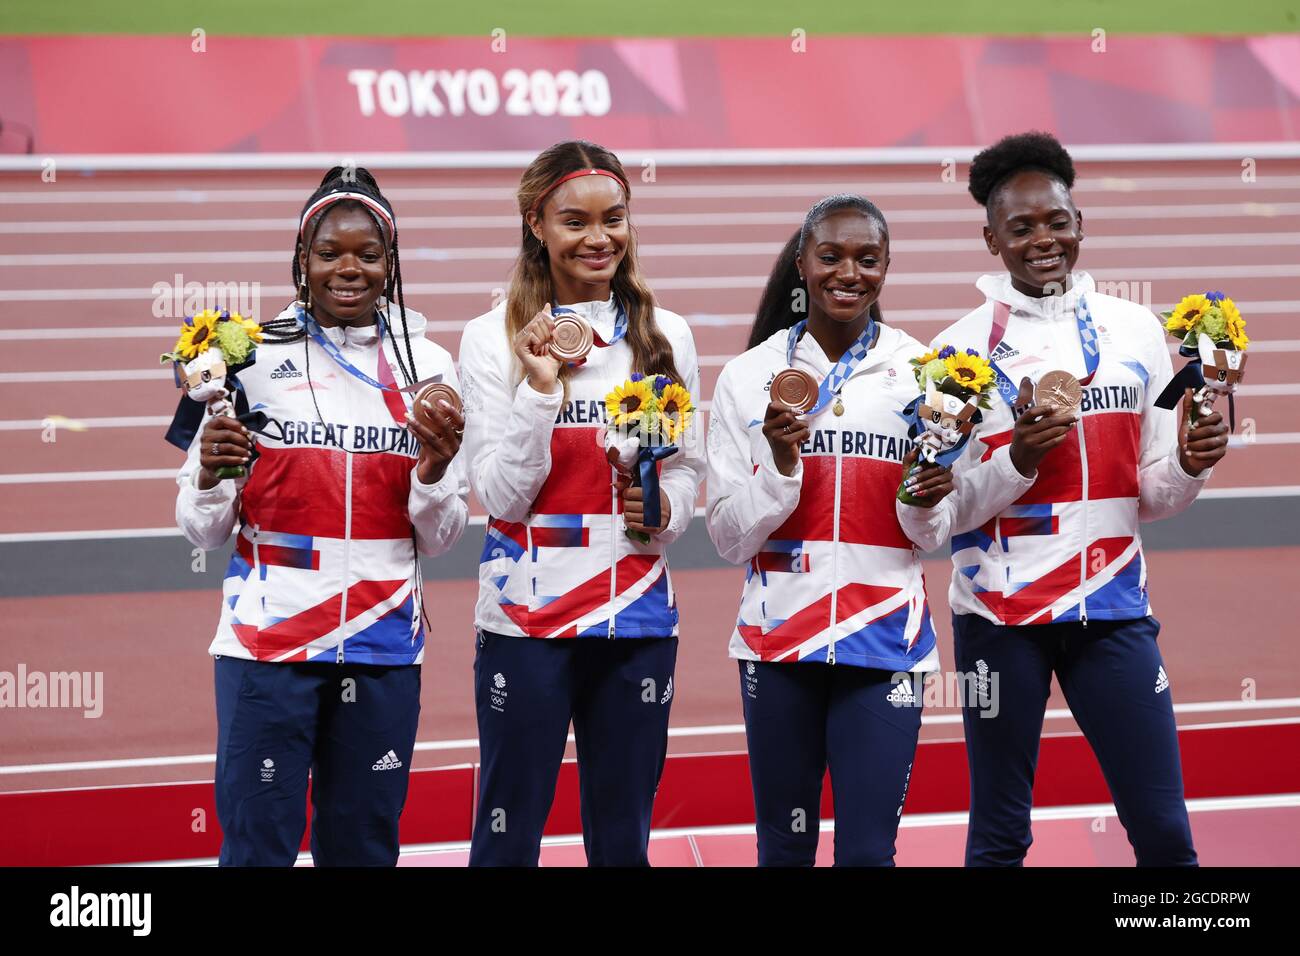 Großbritannien 3. Bronzemedaille während der Olympischen Spiele Tokio 2020, Leichtathletik Damen 4x100 m Staffelmedaille am 7. August 2021 im Olympiastadion in Tokio, Japan - Foto Yuya Nagase / Foto Kishimoto / DPPI Stockfoto